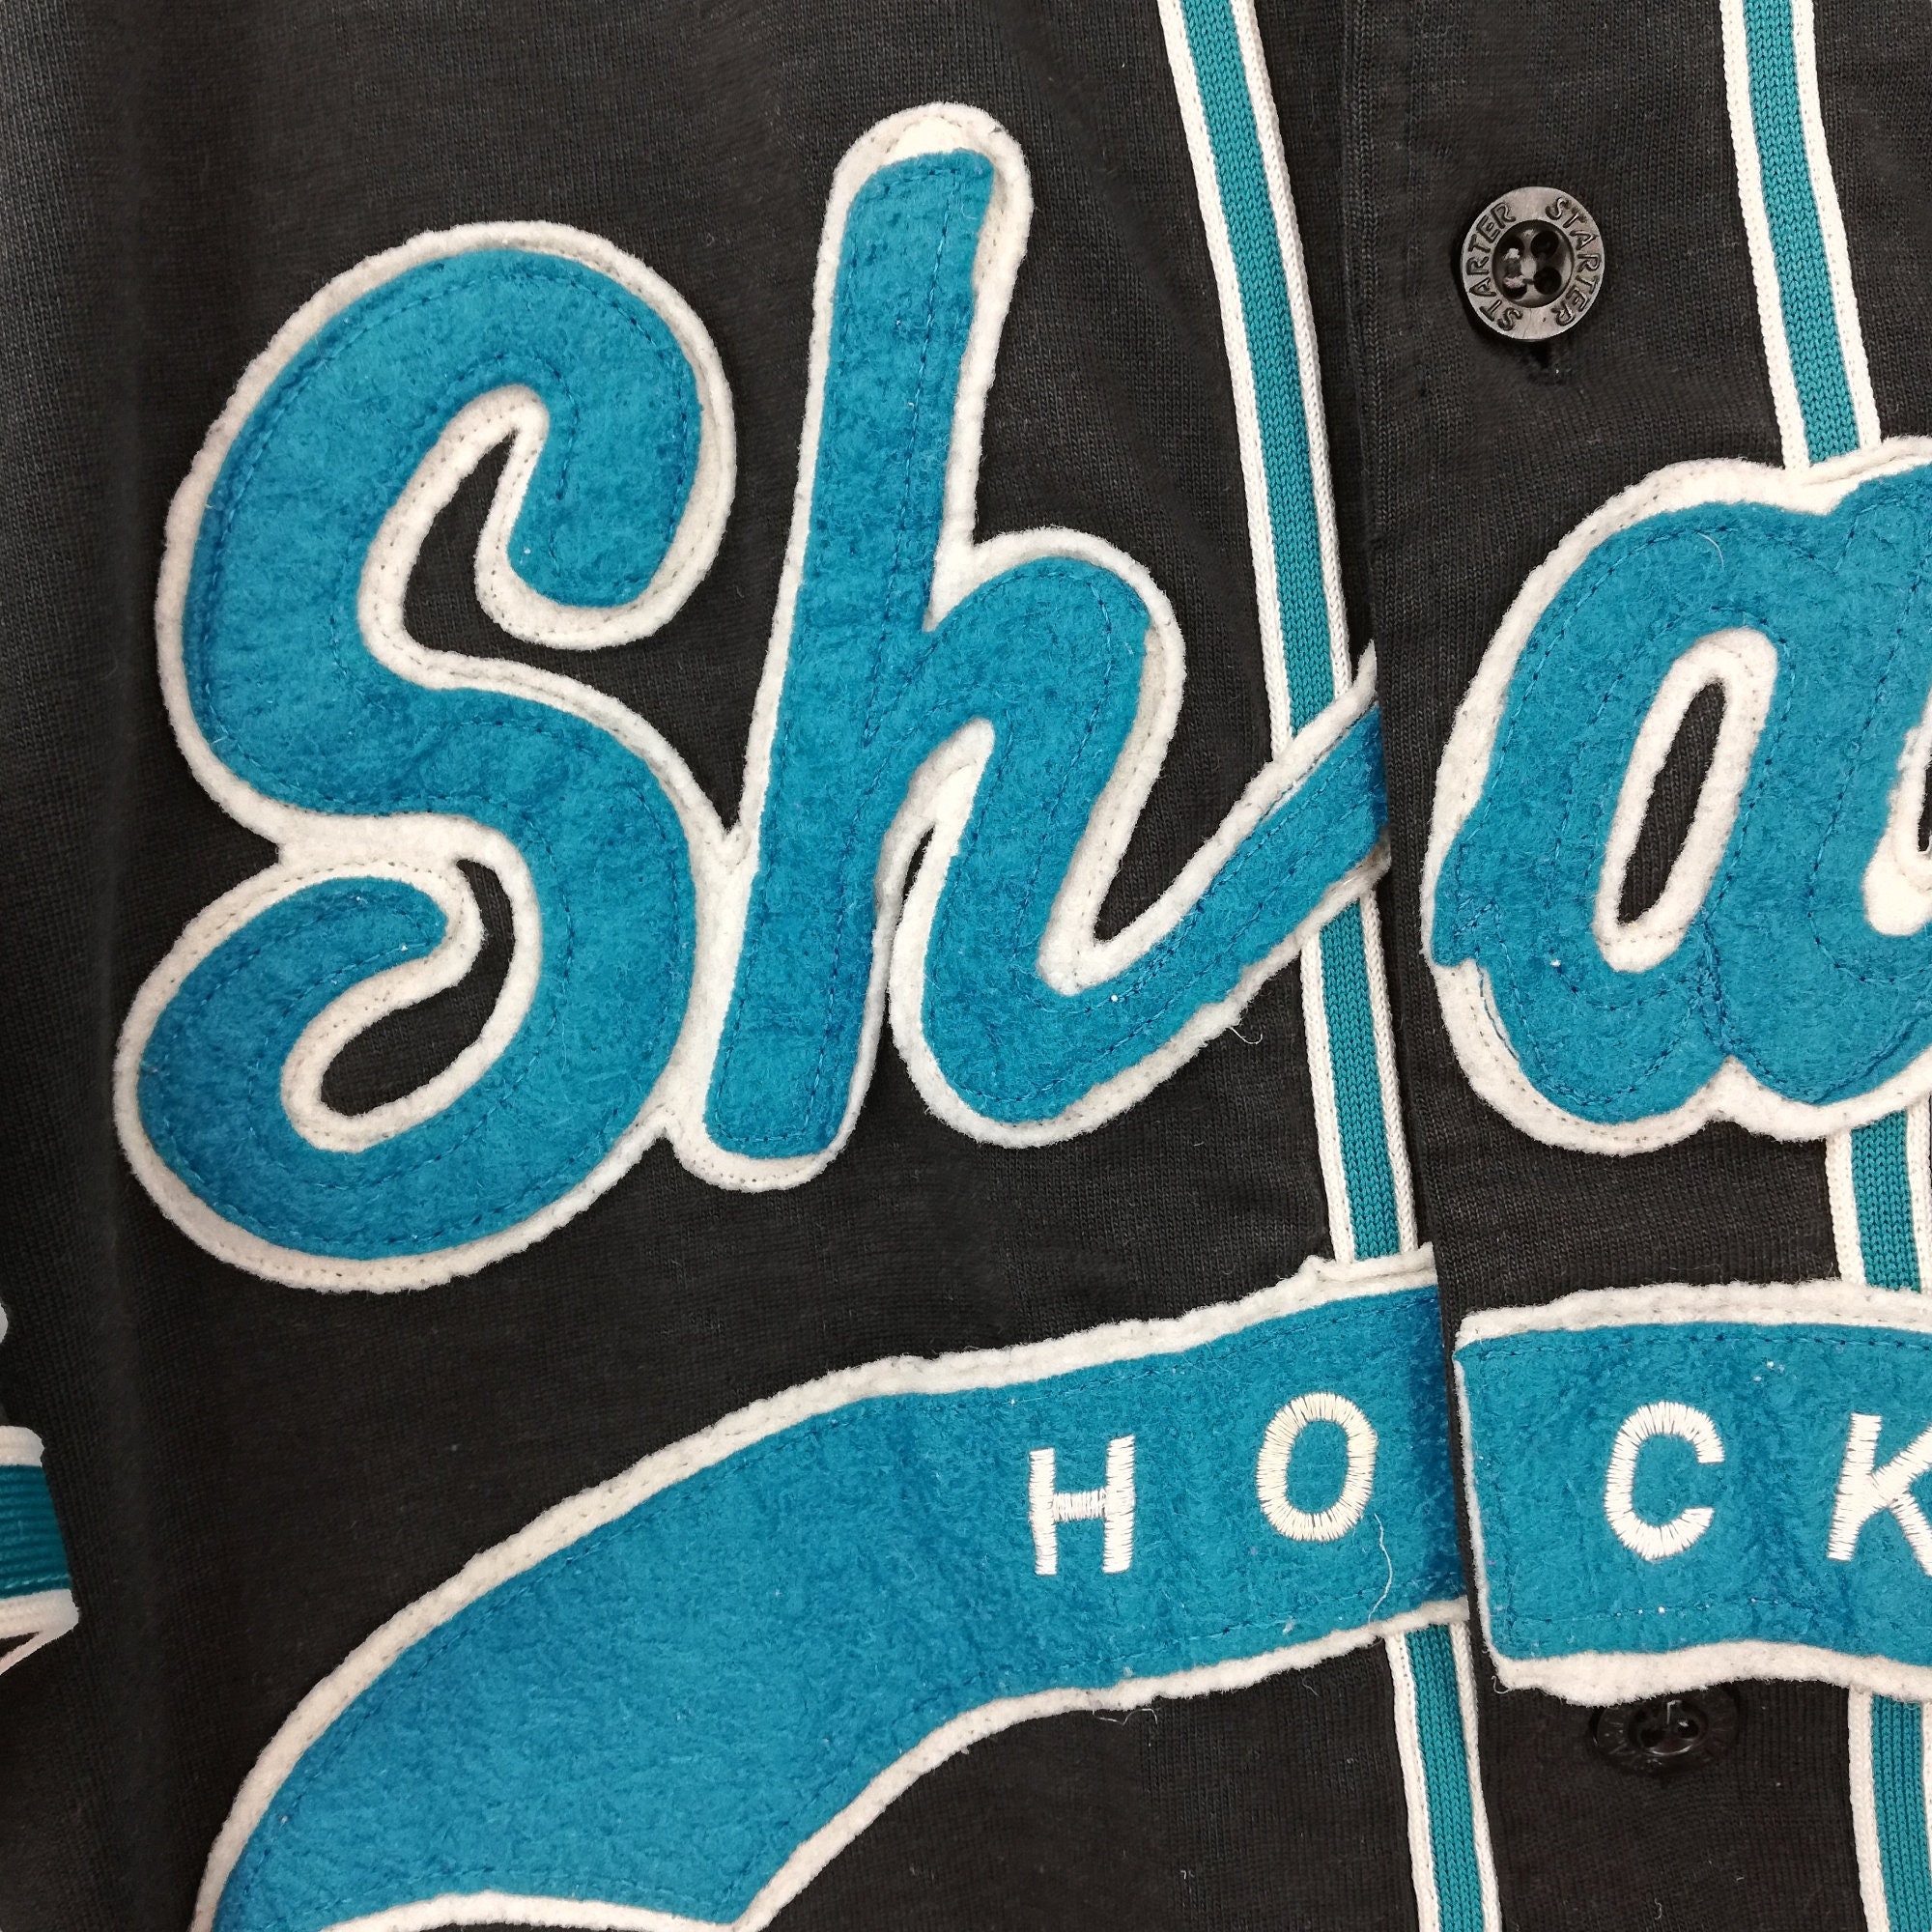 Buy Vintage San Jose Sharks Pin Stripe Baseball Jersey Shirt Online in  India 